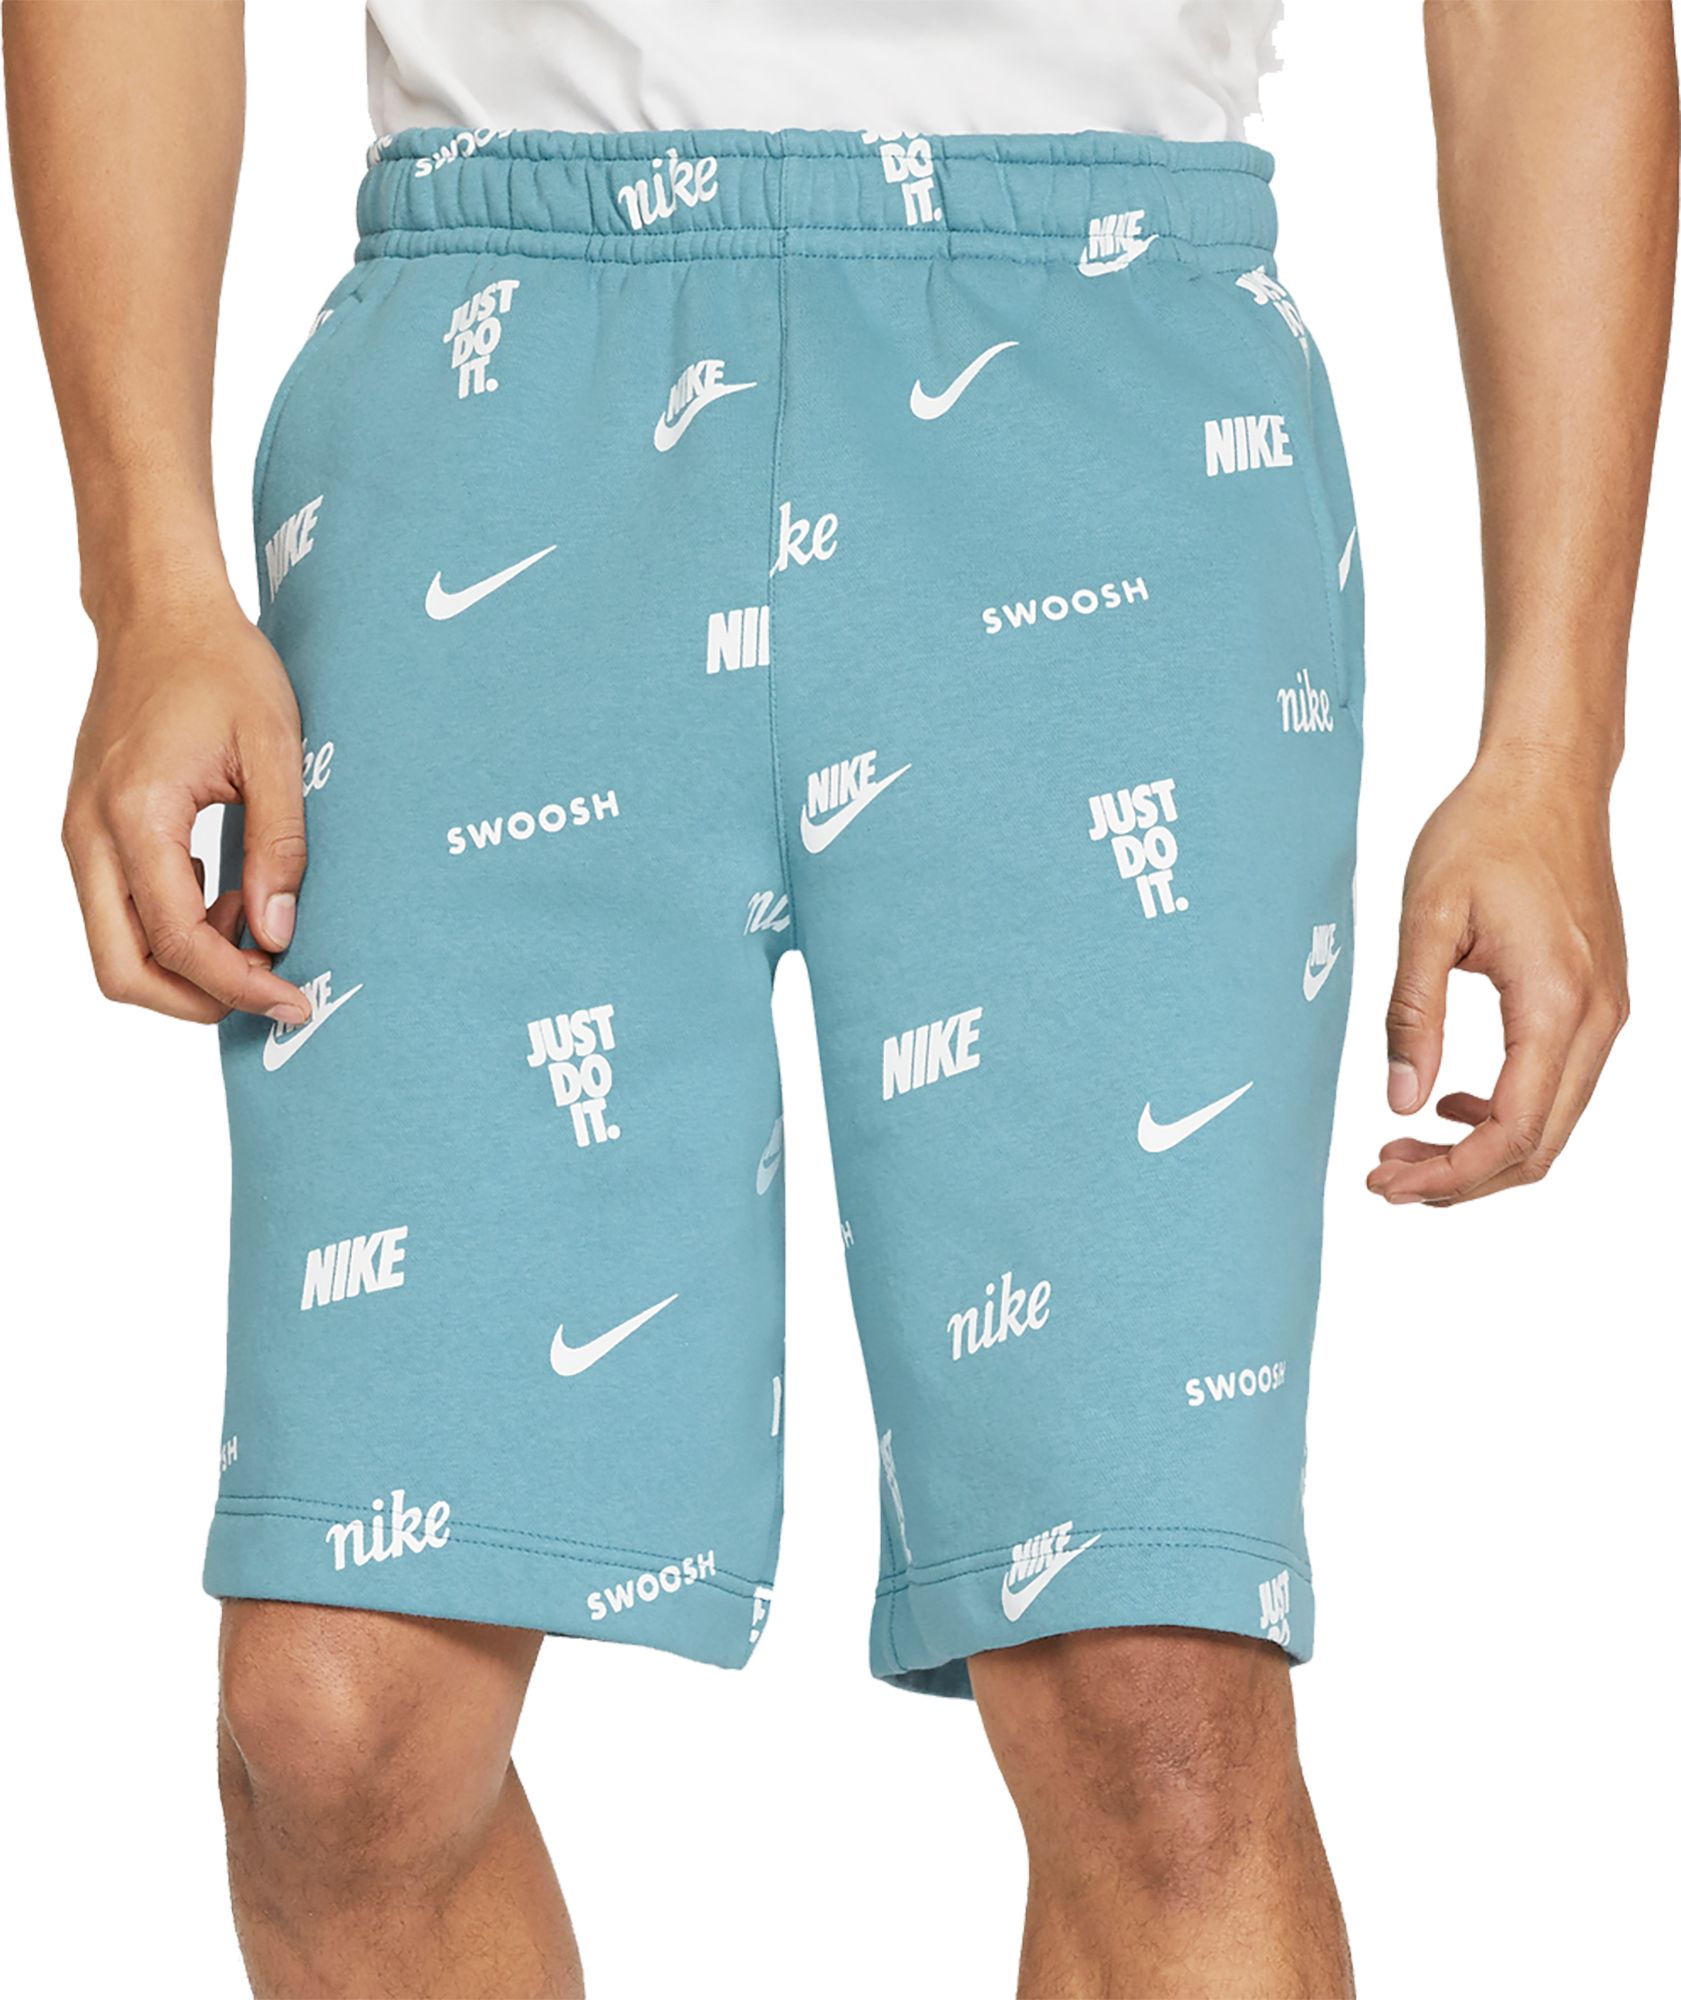 printed nike shorts